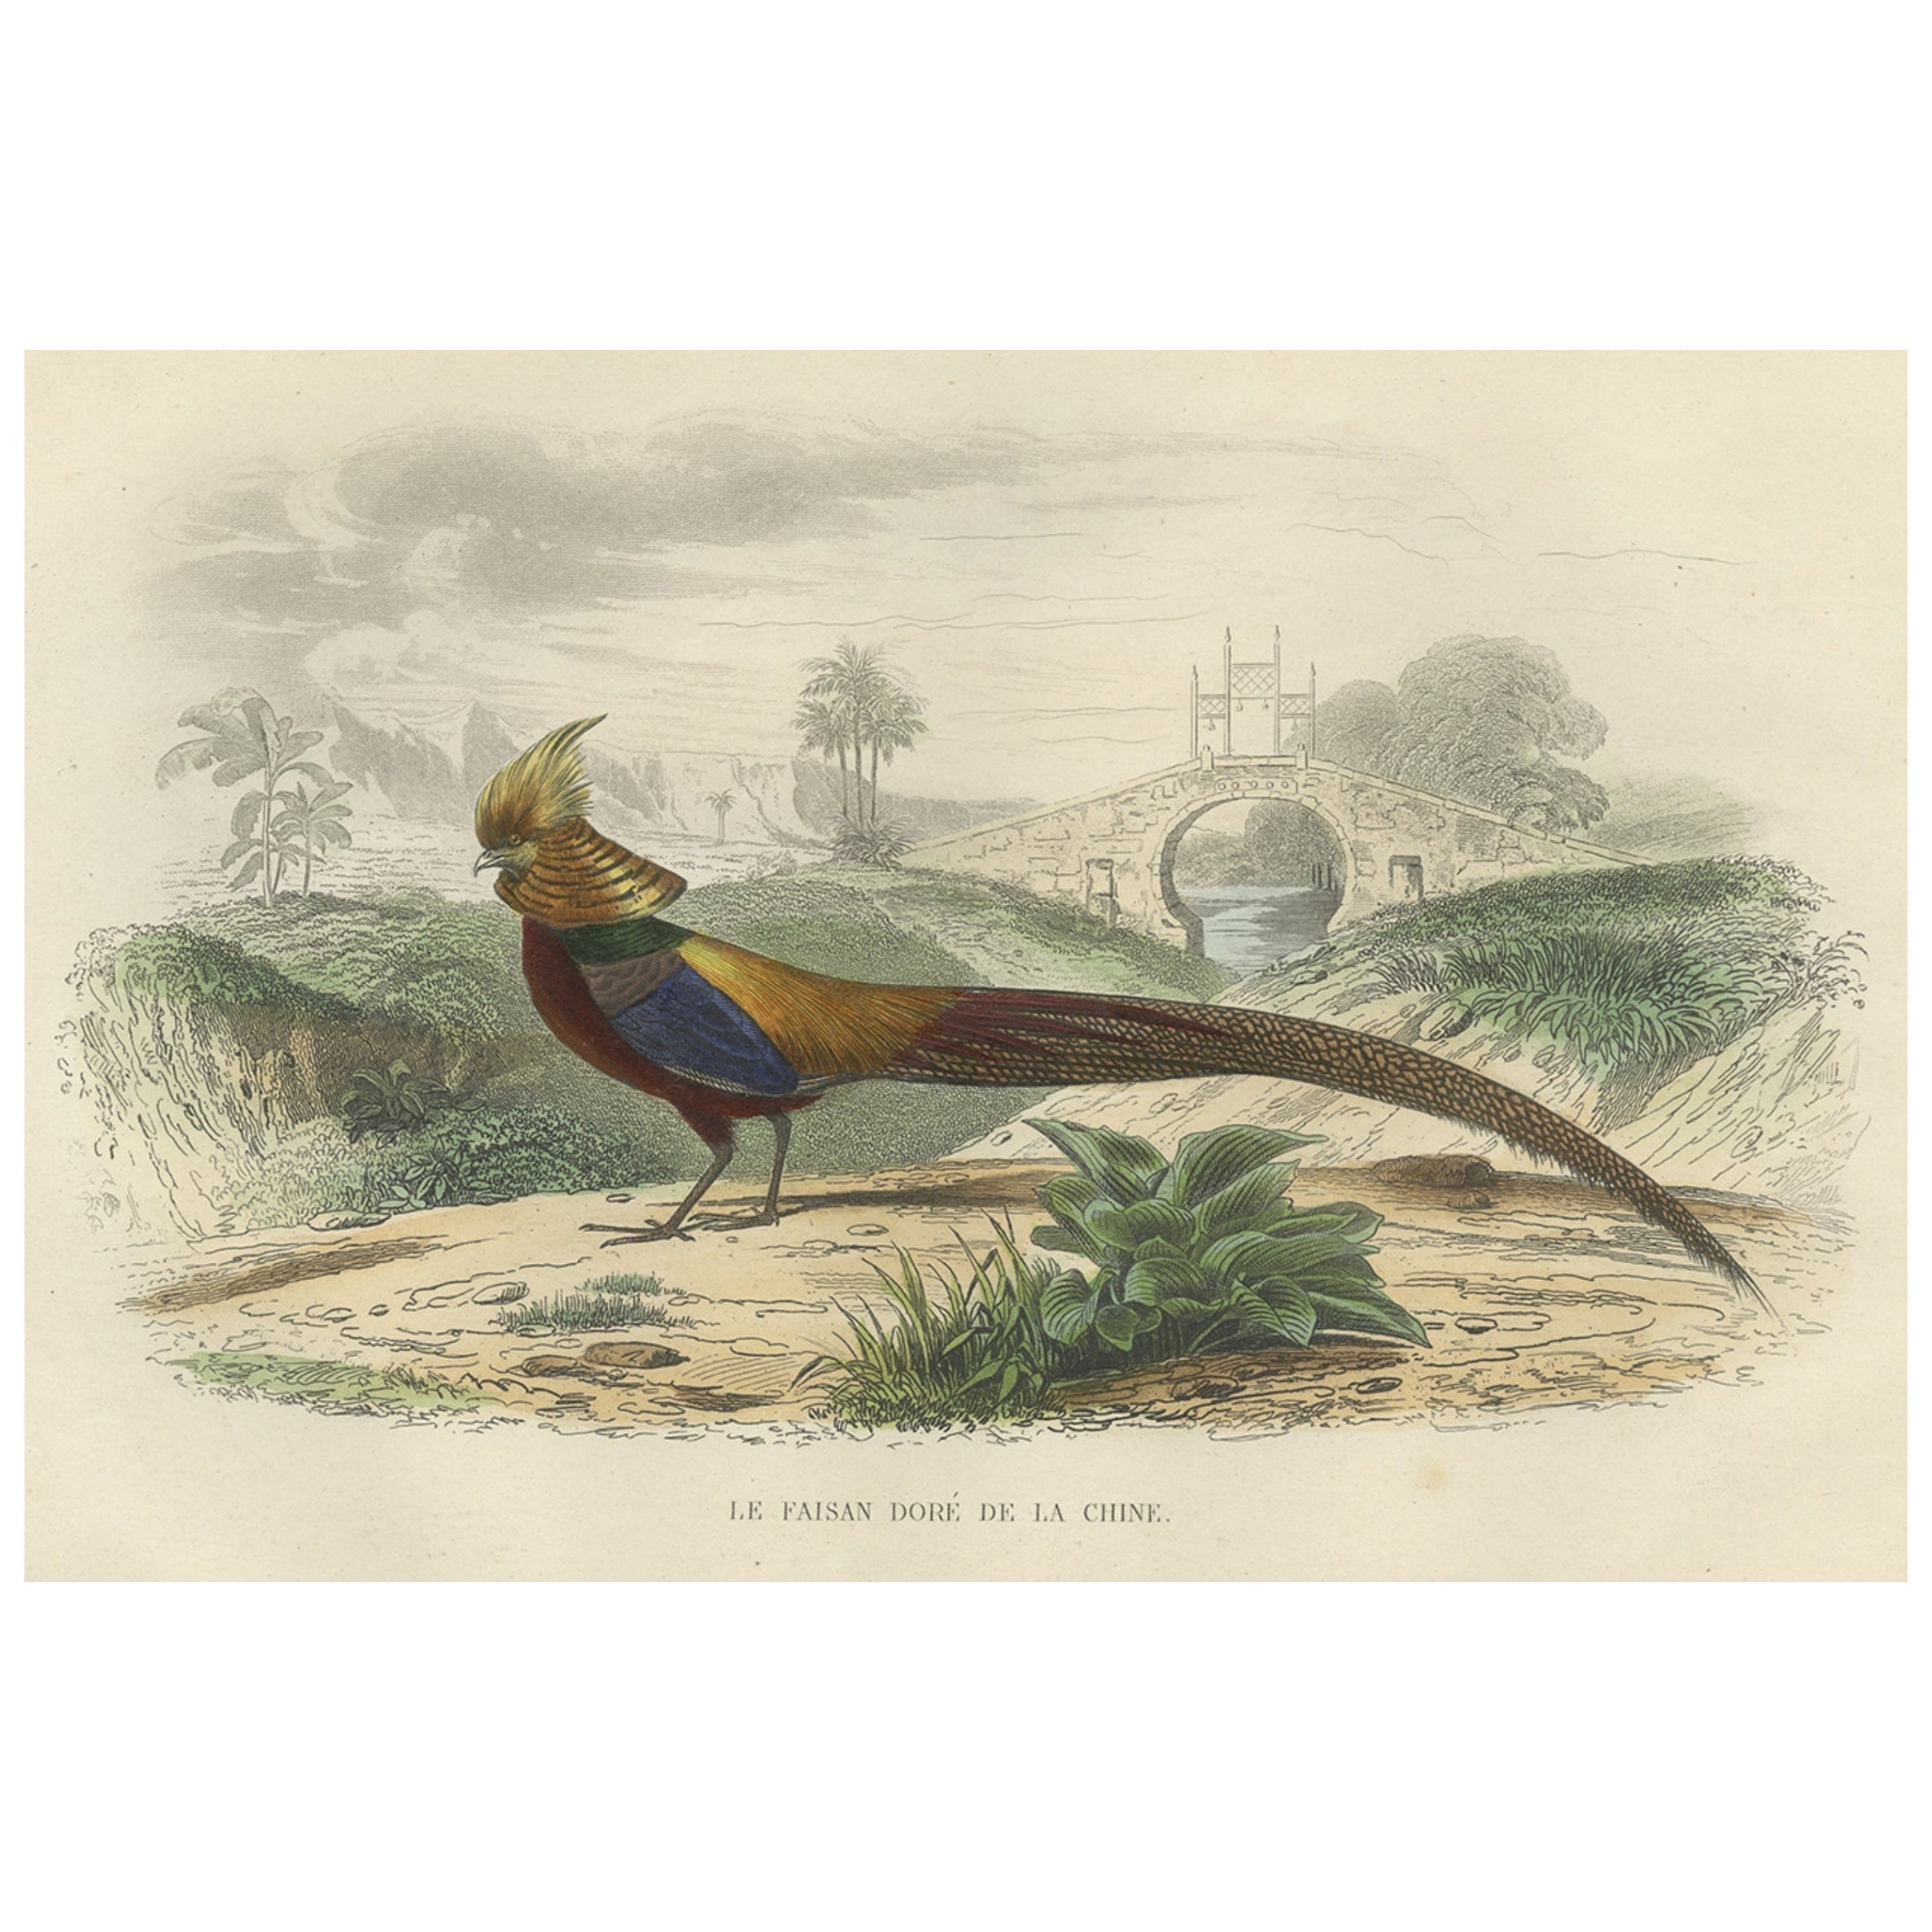 Magnifique imprimé décoratif coloré à la main d'un faisan doré de Chine, vers 1840